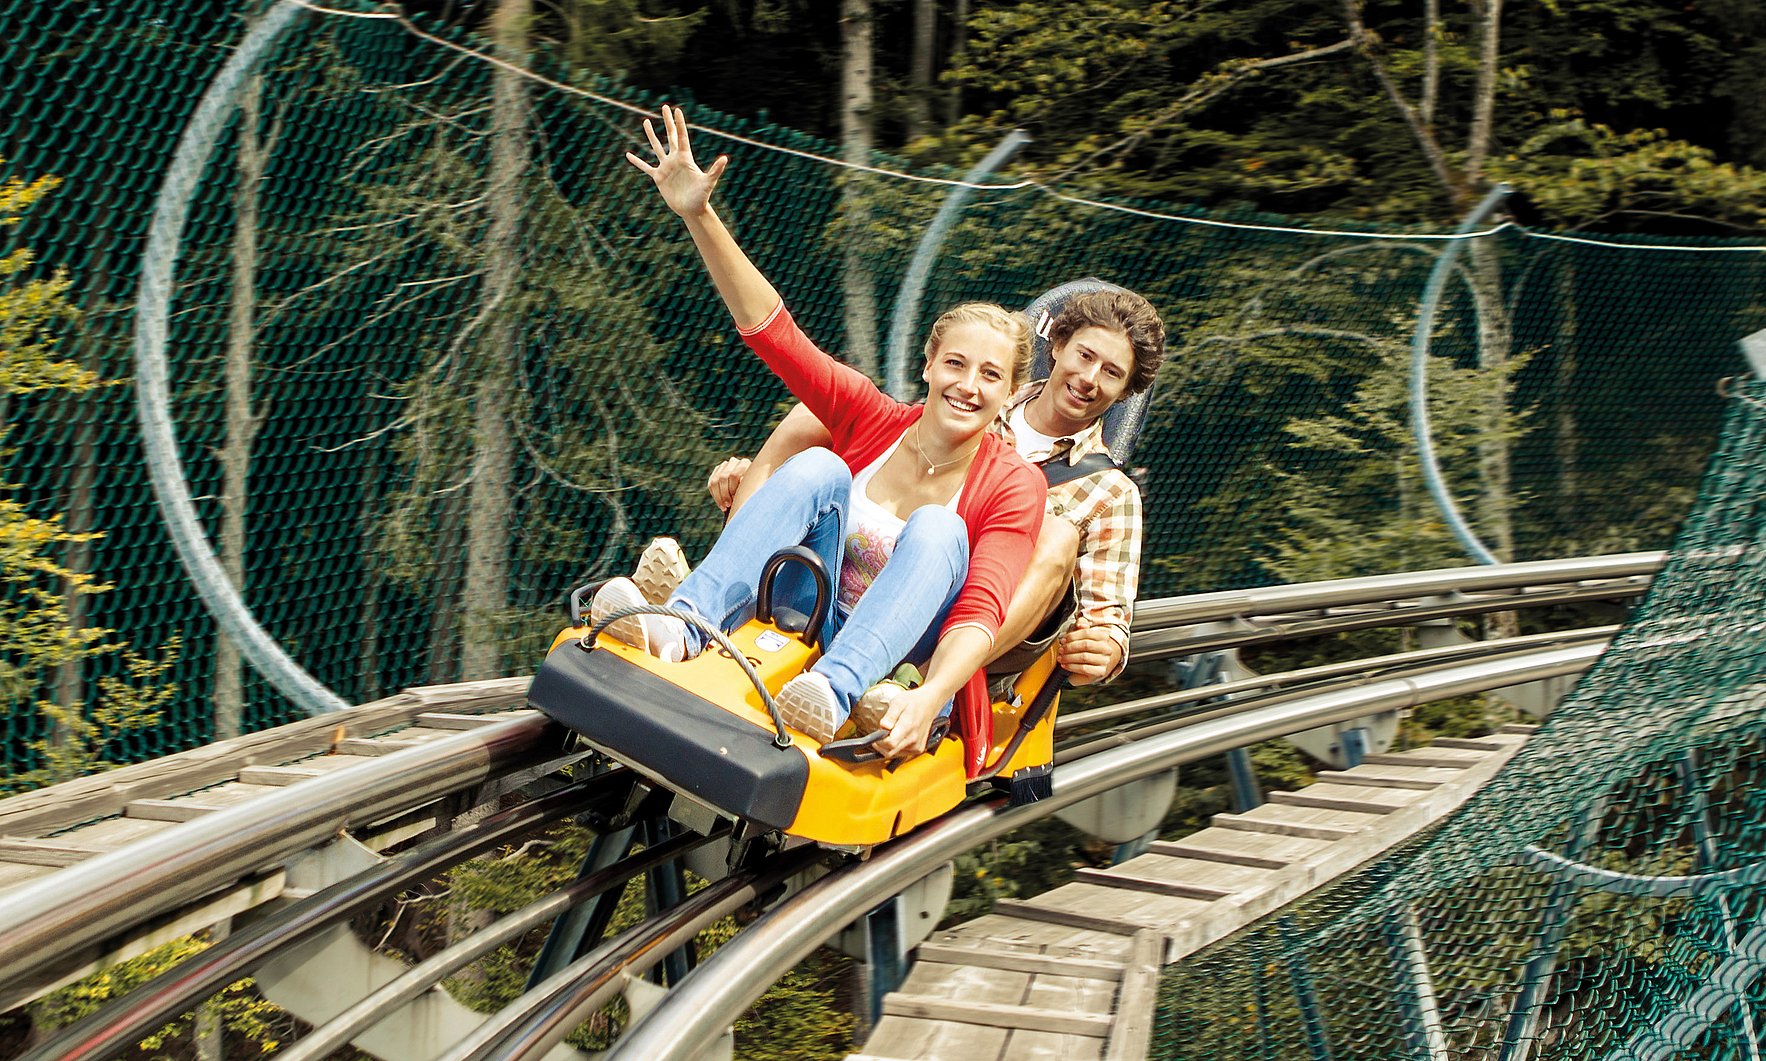 Zwei junge Erwachsene fahren den Alpsee Coaster der Alpsee Bergwelt in Immenstadt.